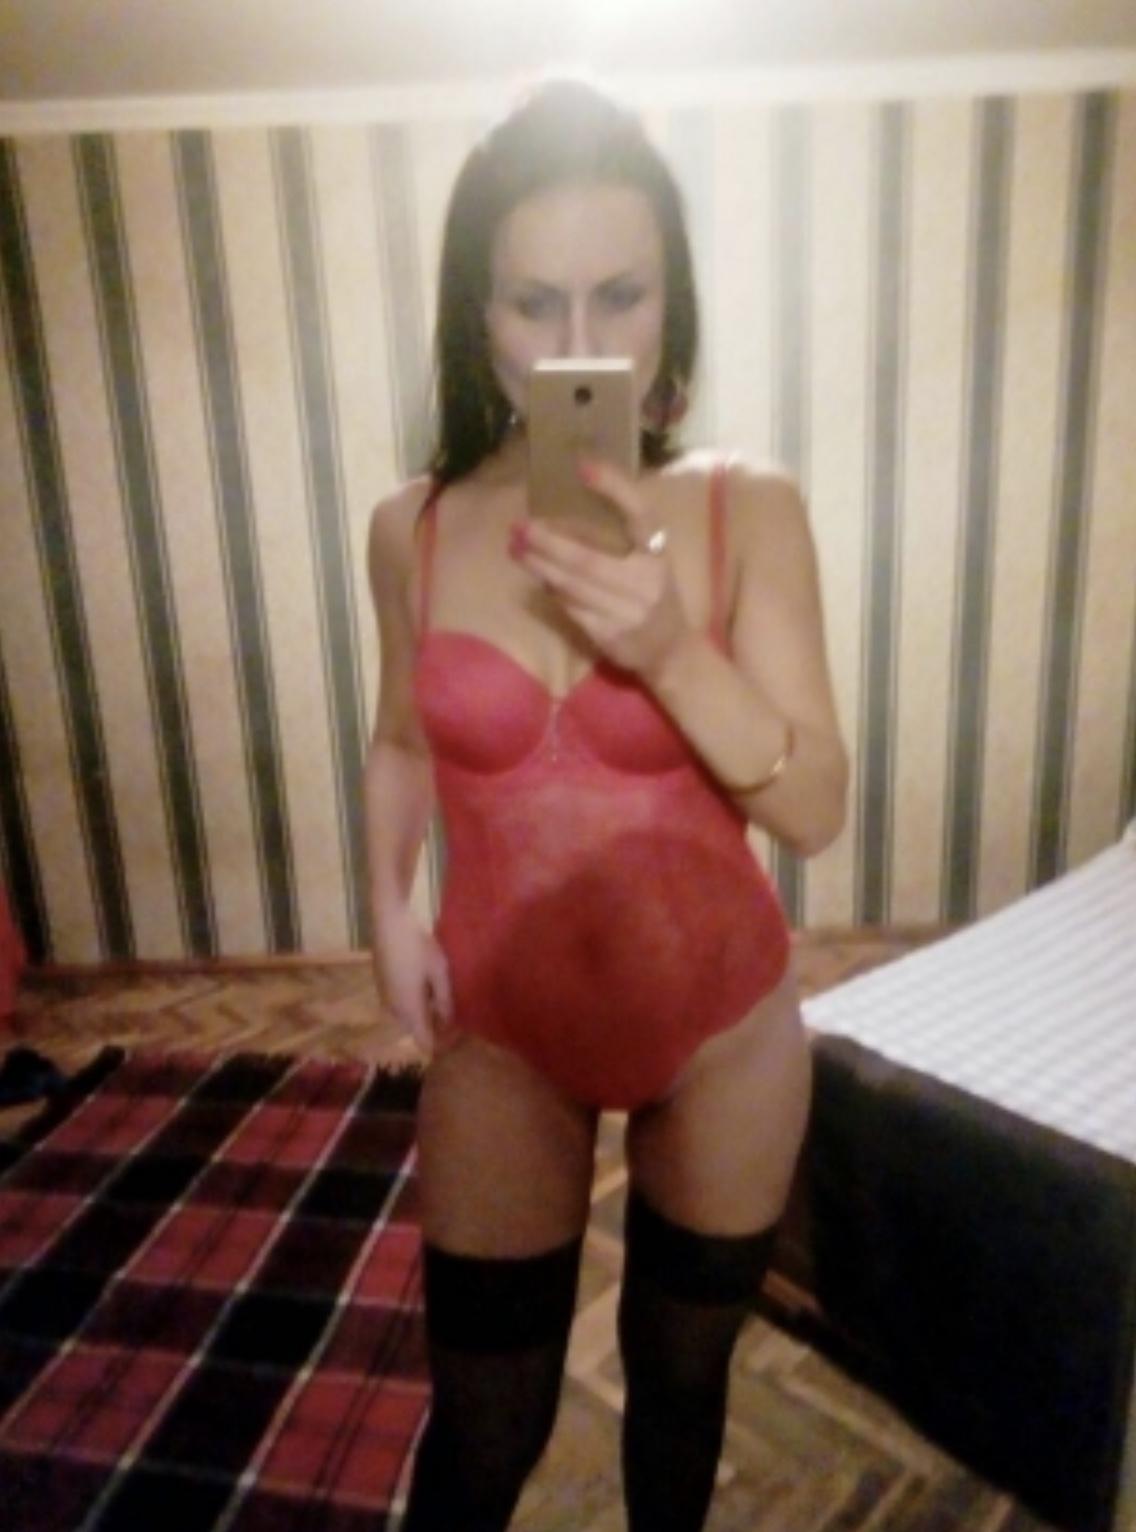 Проститутка Даша, фото 1, тел: 0964776851. В центре города - Киев